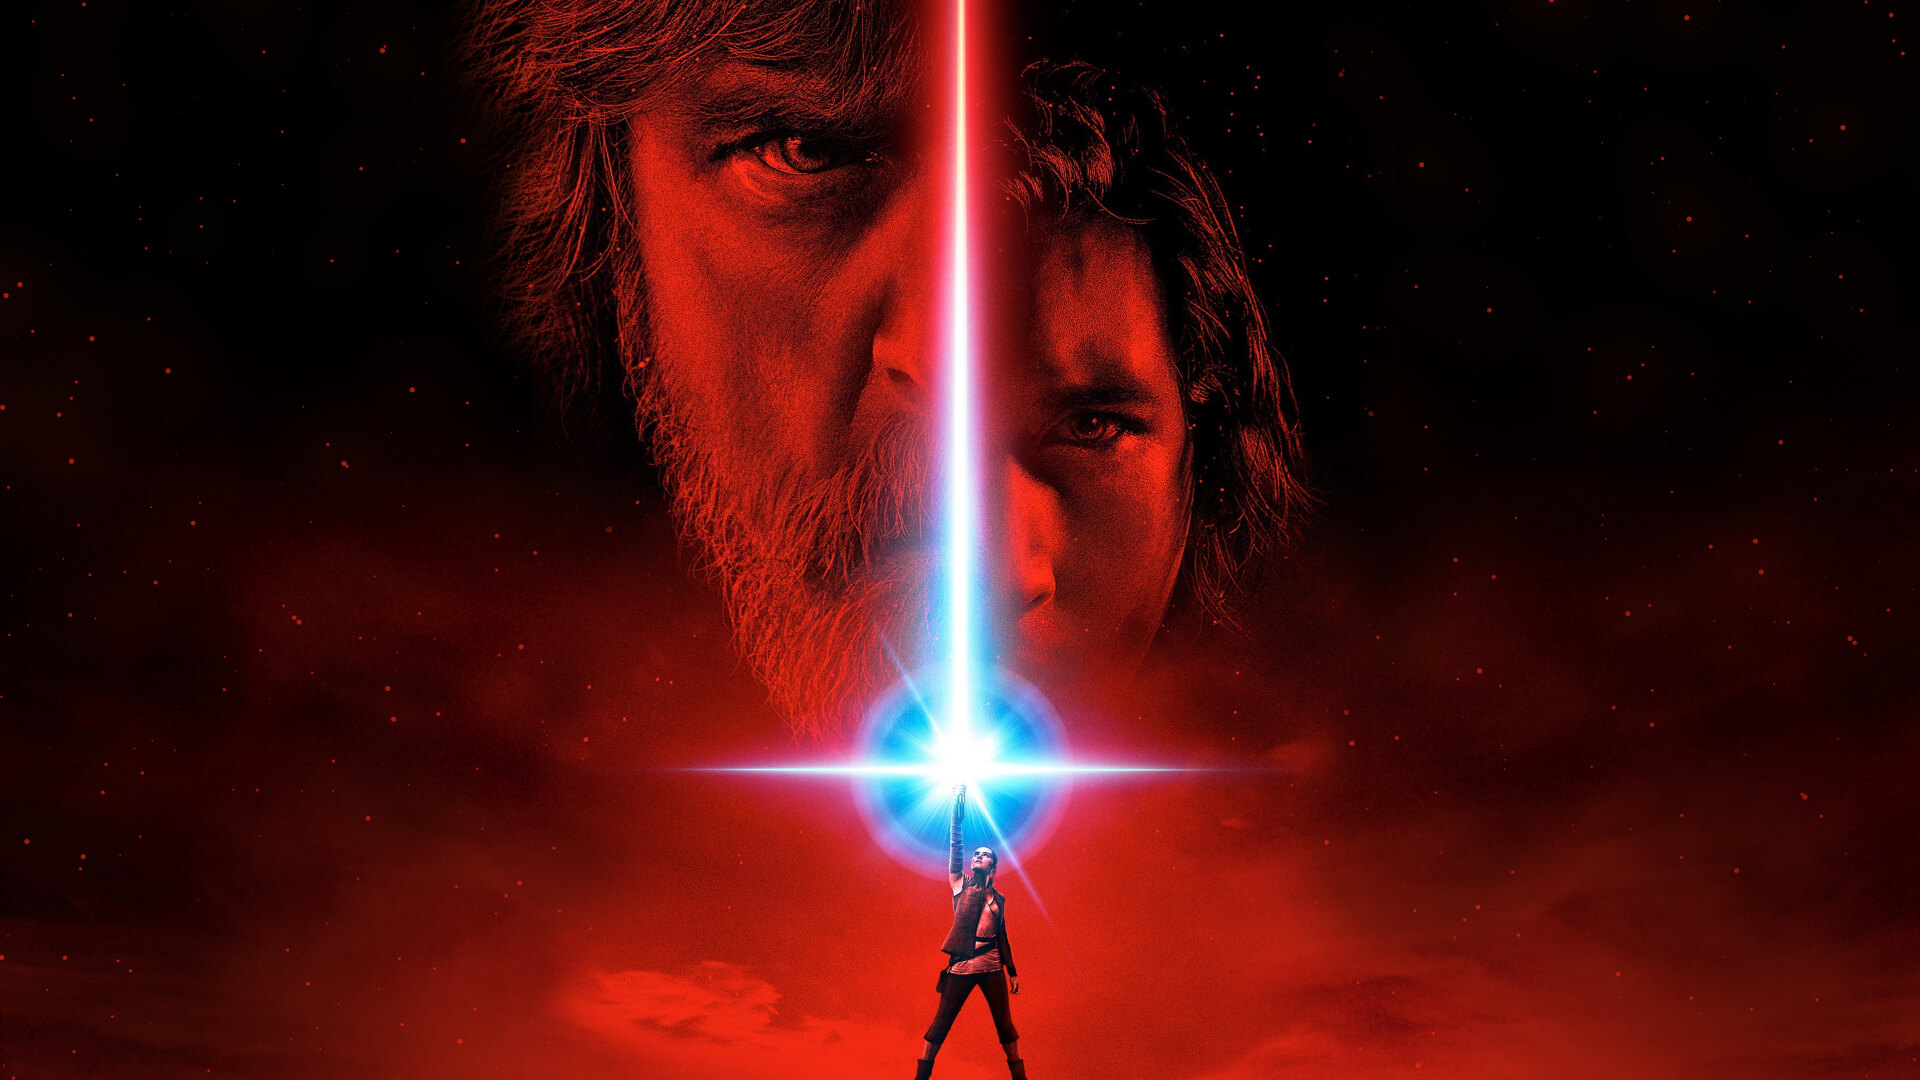 Star Wars: The Last Jedi - Luke/Rey VS Snoke/Kylo?